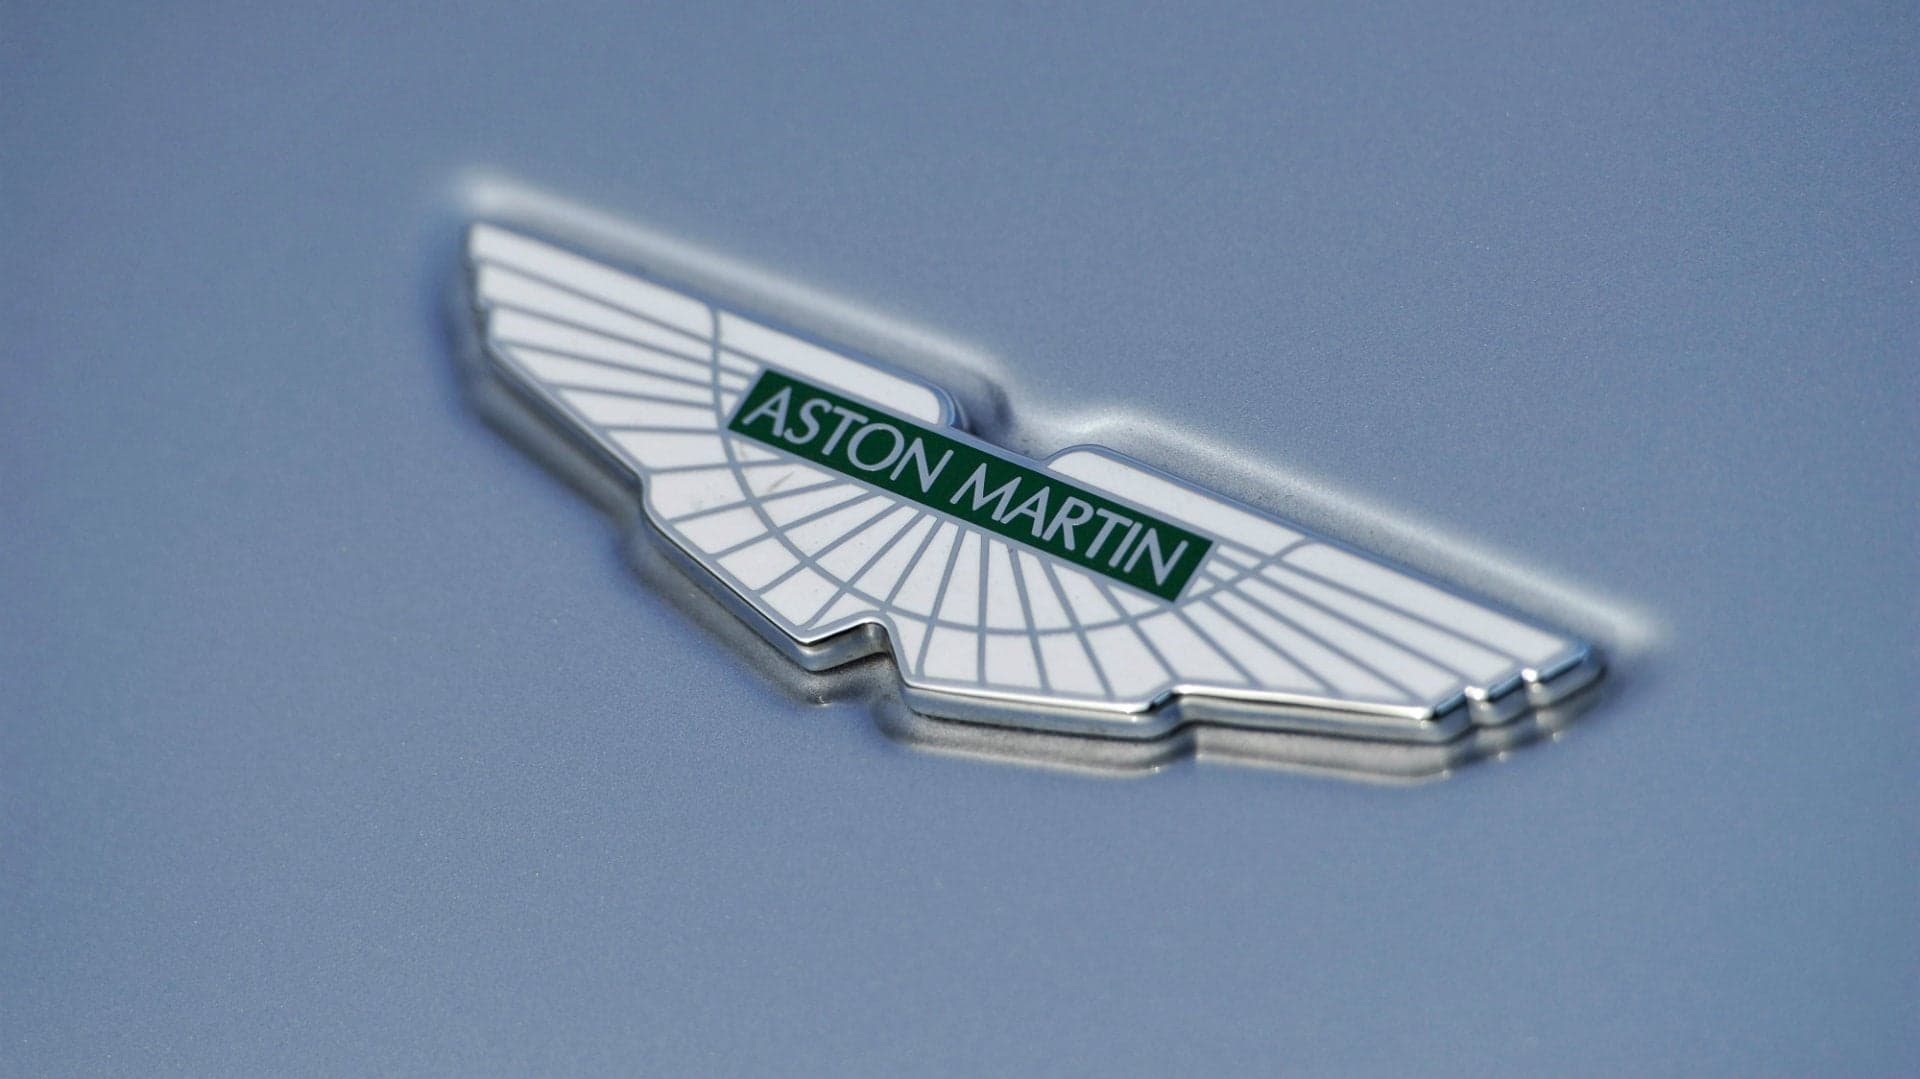 Aston Martin Makes Public Trading Debut on London Stock Exchange to Mixed Reaction